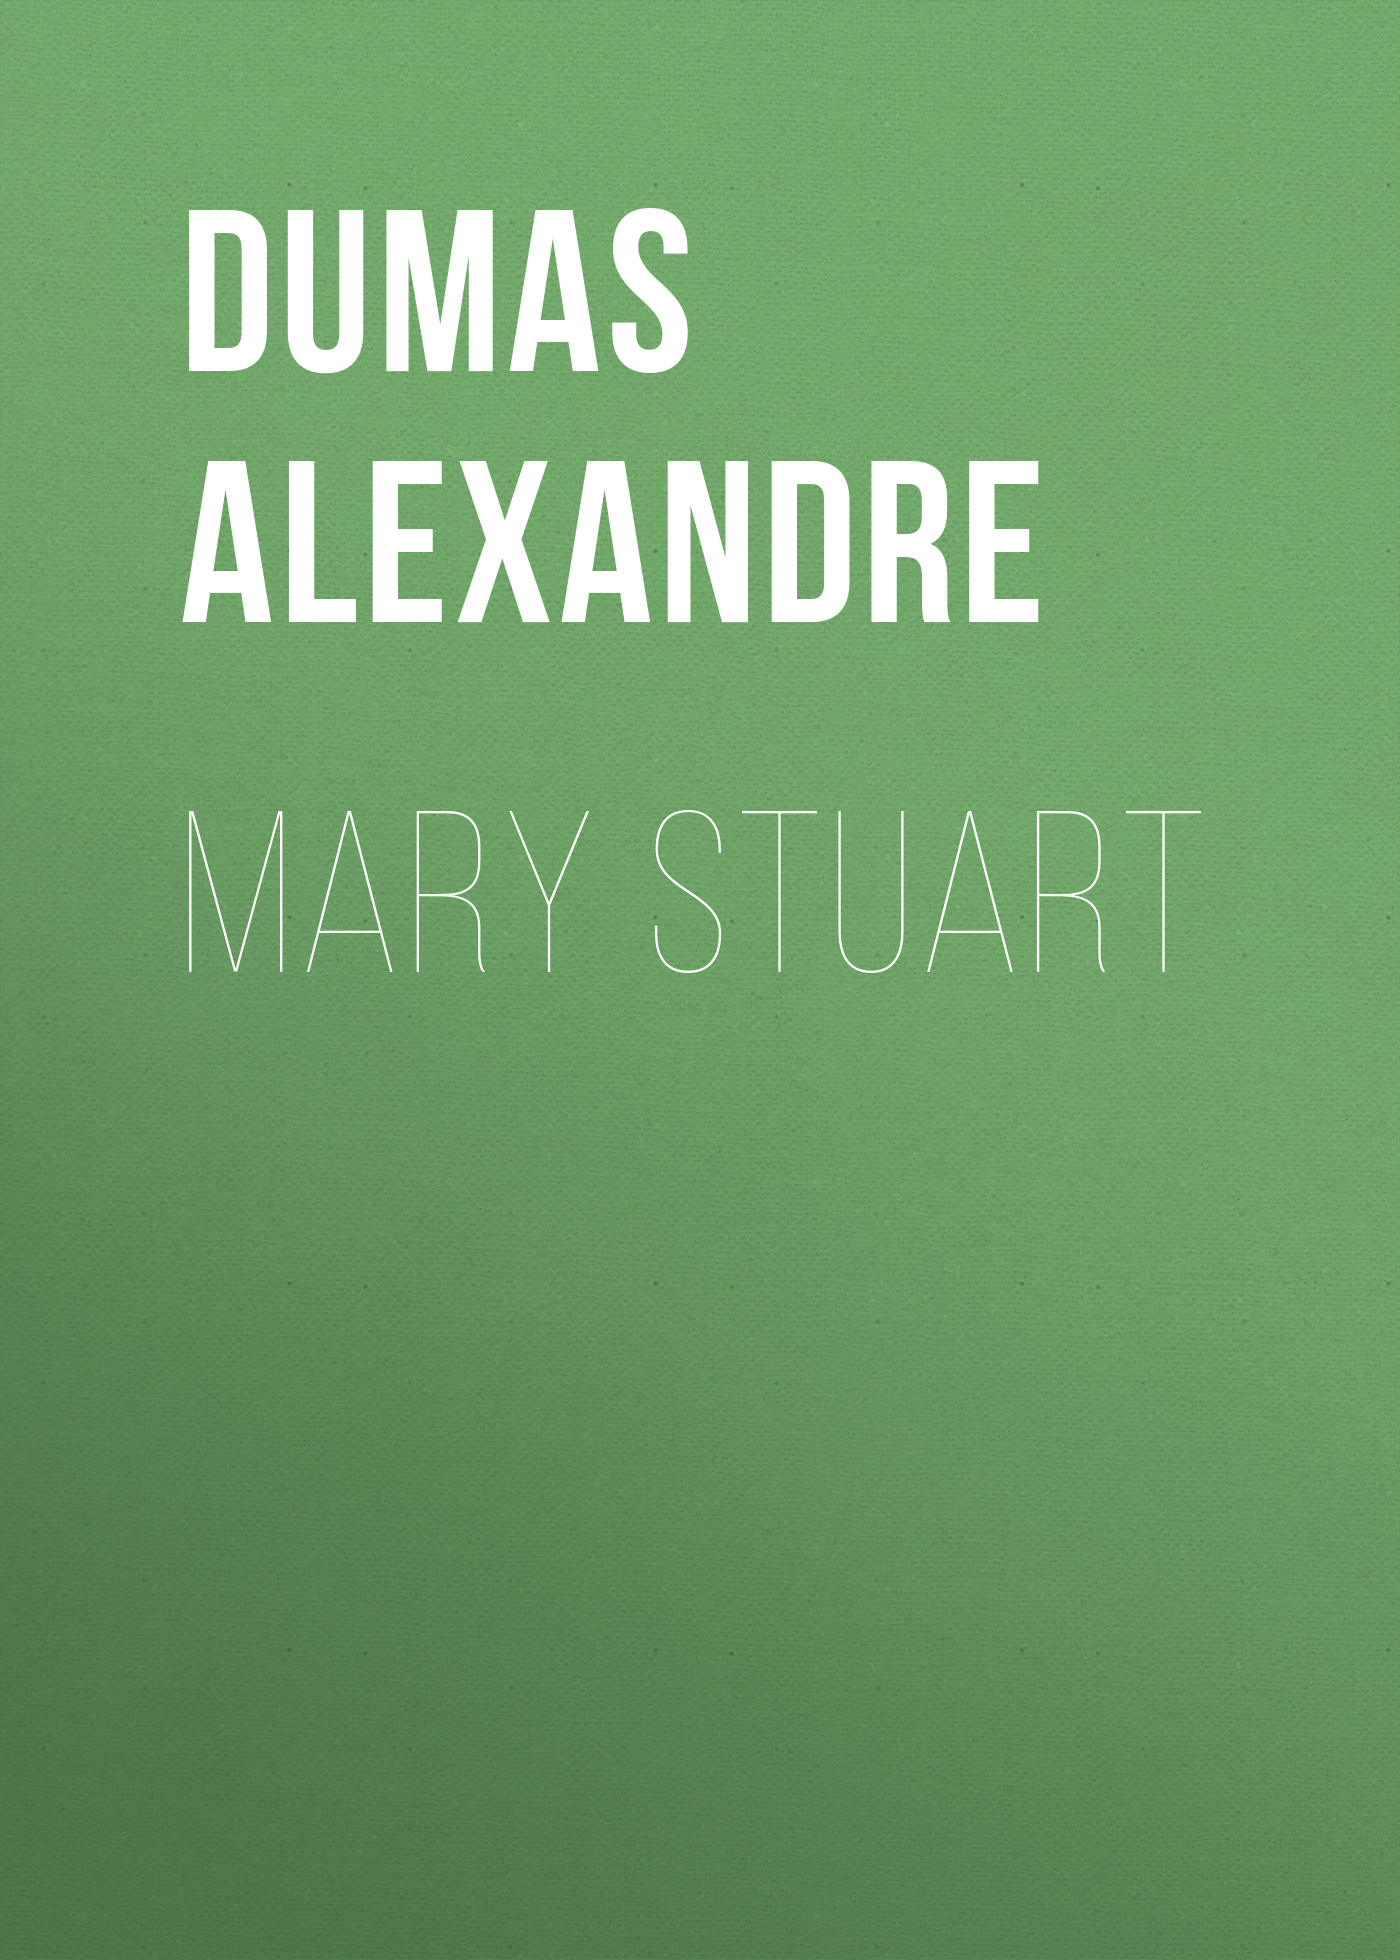 Книга Mary Stuart из серии , созданная Alexandre Dumas, может относится к жанру Литература 19 века, Зарубежная старинная литература, Зарубежная классика. Стоимость электронной книги Mary Stuart с идентификатором 25202831 составляет 0 руб.